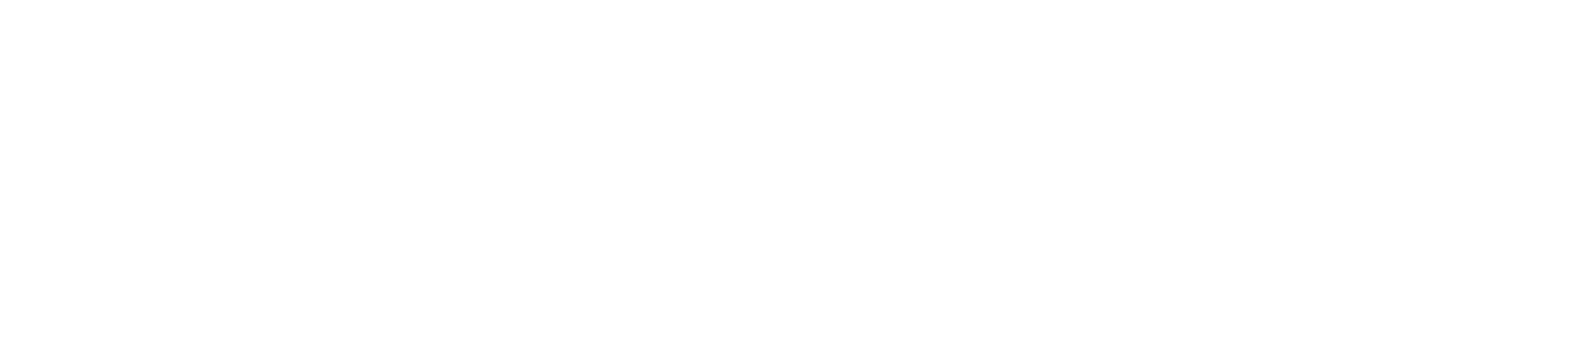 Westrock logo large for dark backgrounds (transparent PNG)